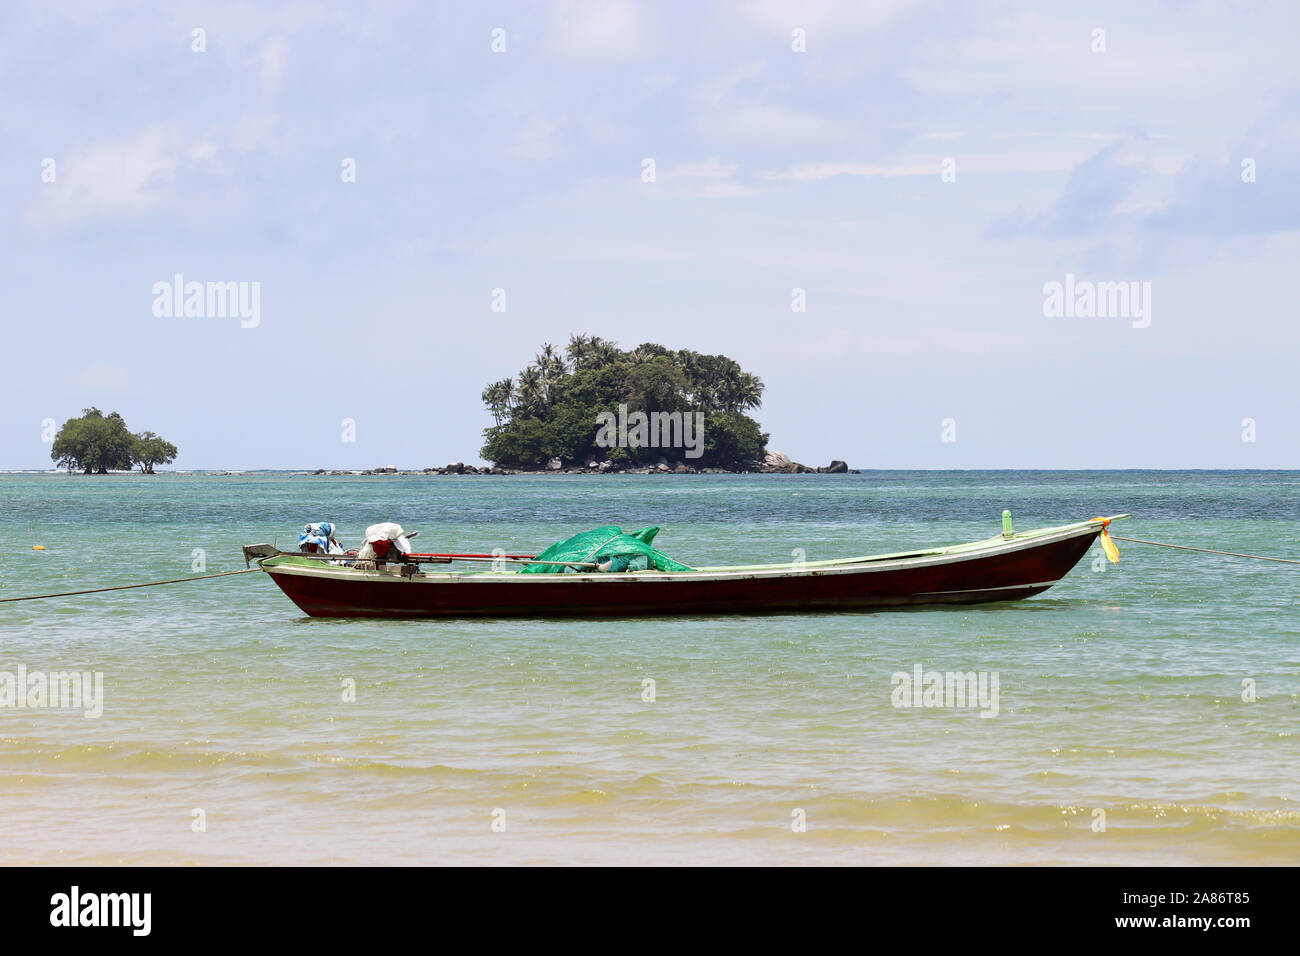 Bateau de pêche dans la mer de l'arrière-plan sur les îles tropicales avec des cocotiers. Seascape pittoresque en Thaïlande Banque D'Images